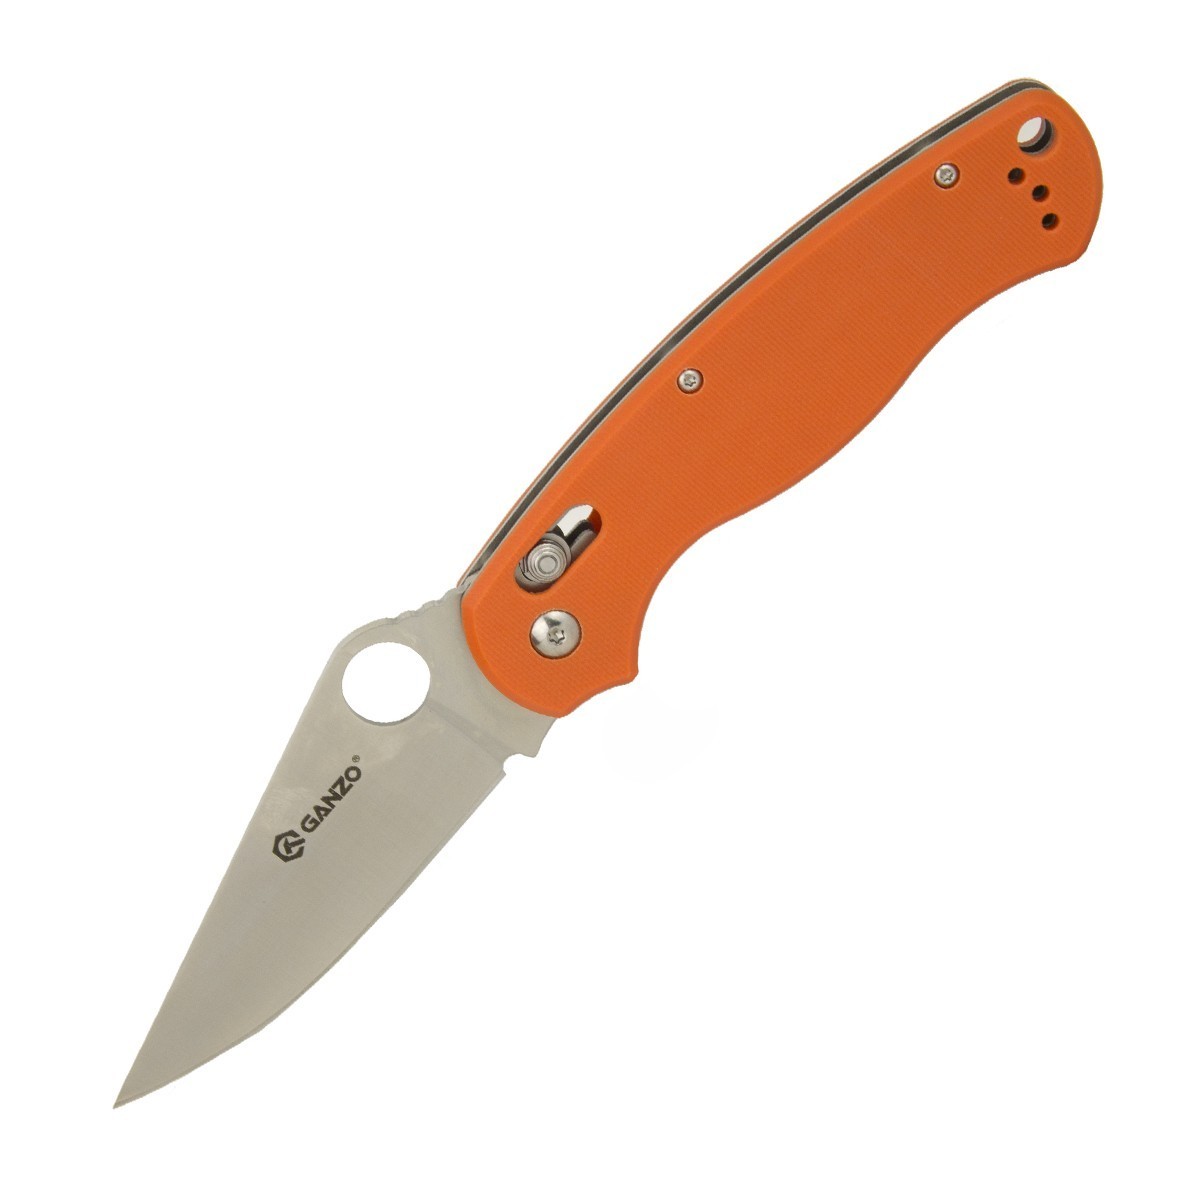 Нож Ganzo G729-OR, оранжевый, Бренды, Ganzo